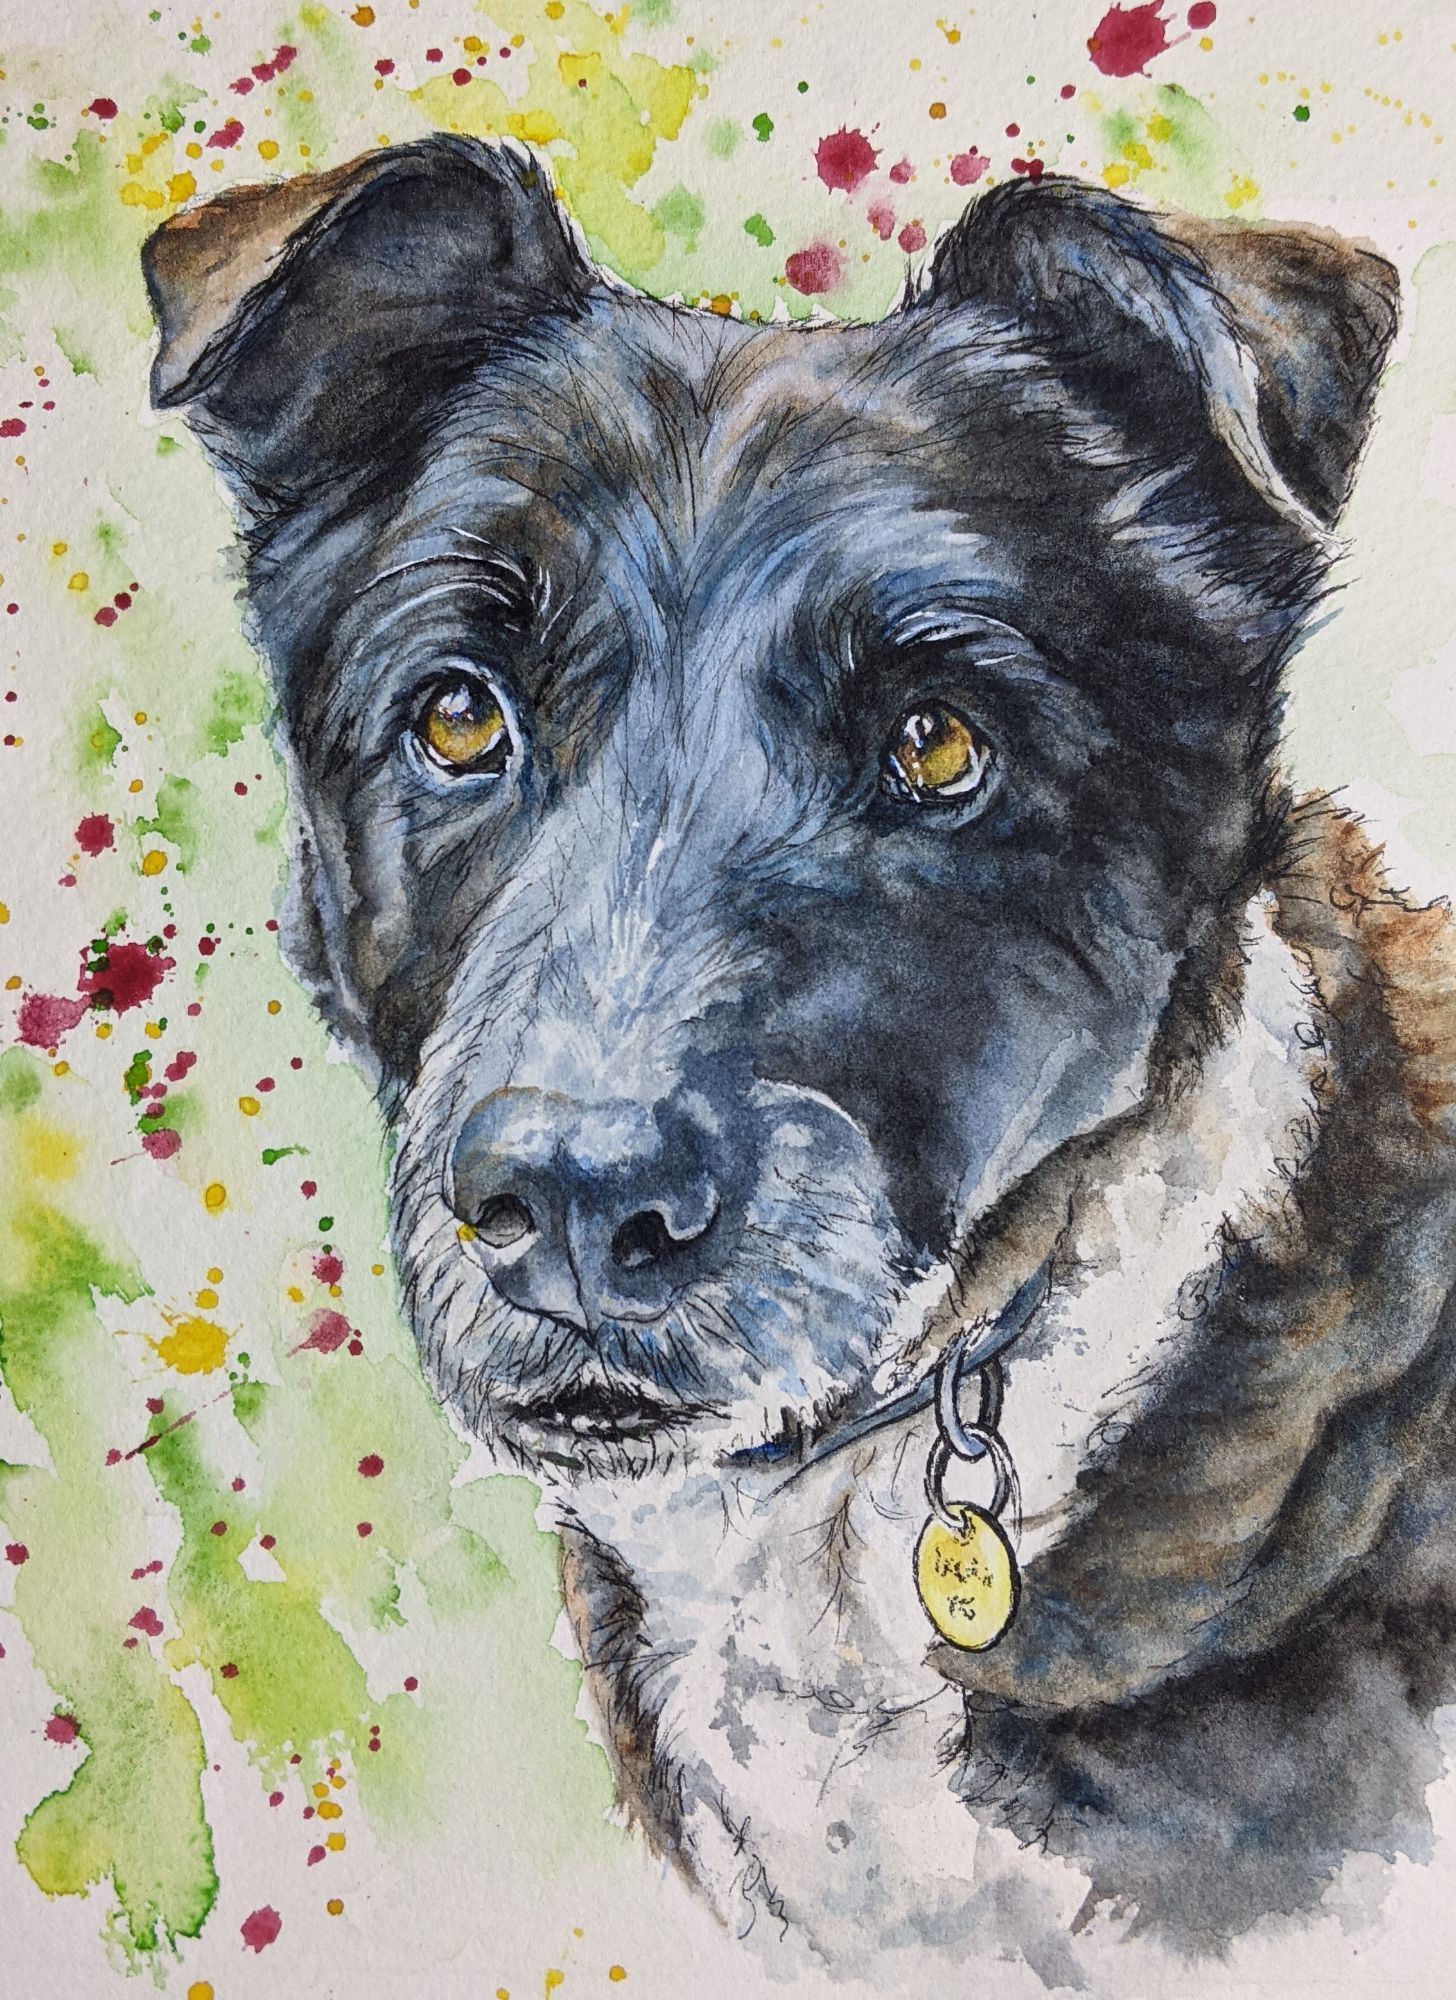 Watercolour & ink dog portrait